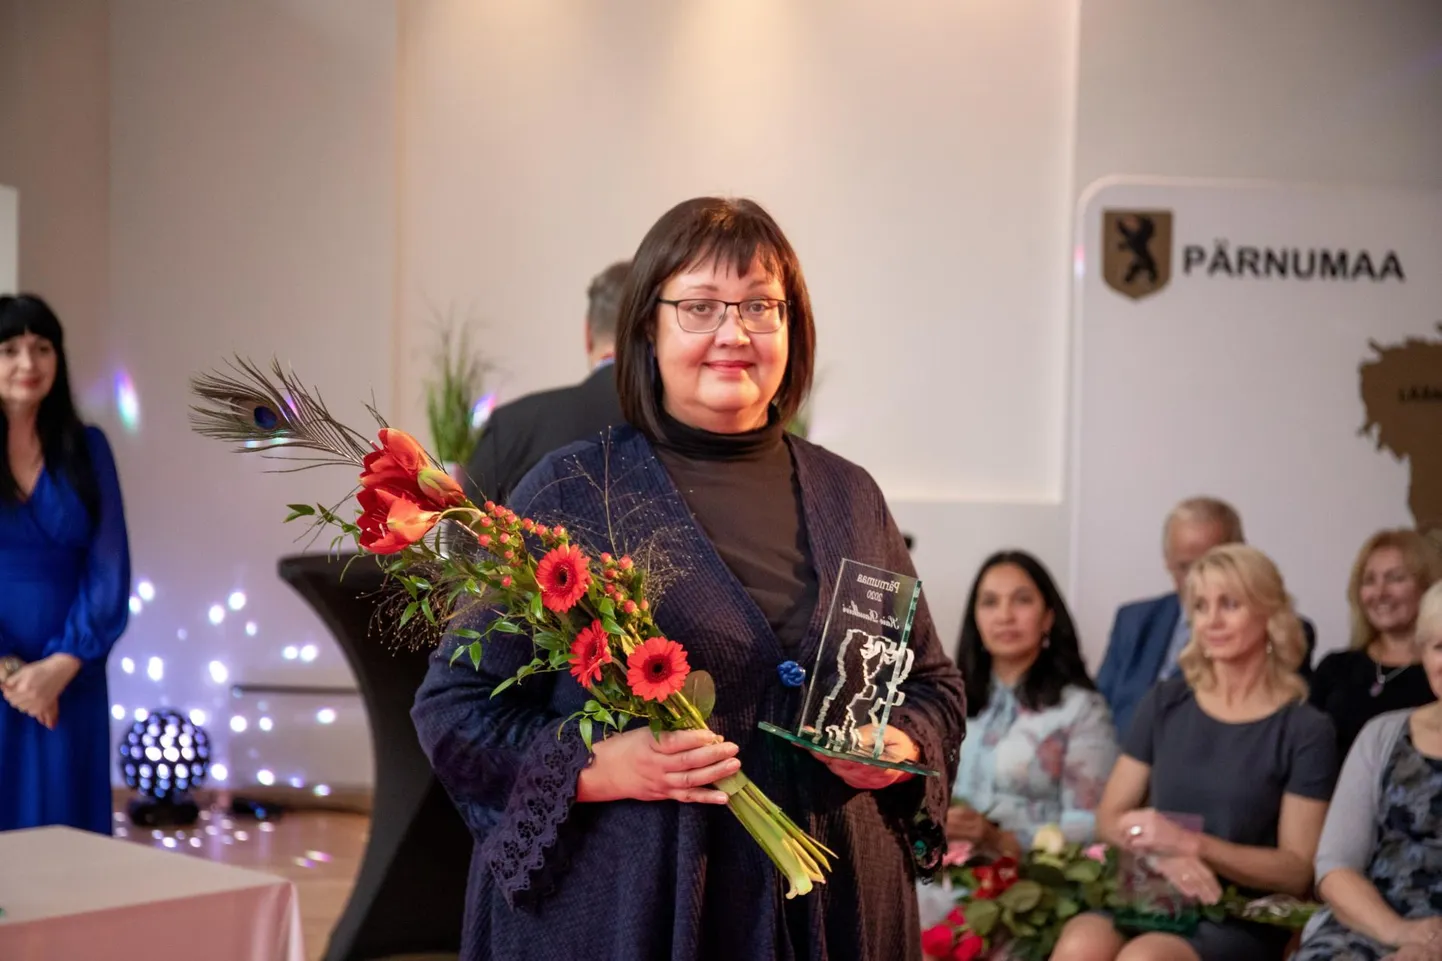 Год назад Кайе Раудкиви на розовой ковровой дорожке получила награду как лучшая воспитательница детского сада в Пярнумаа.